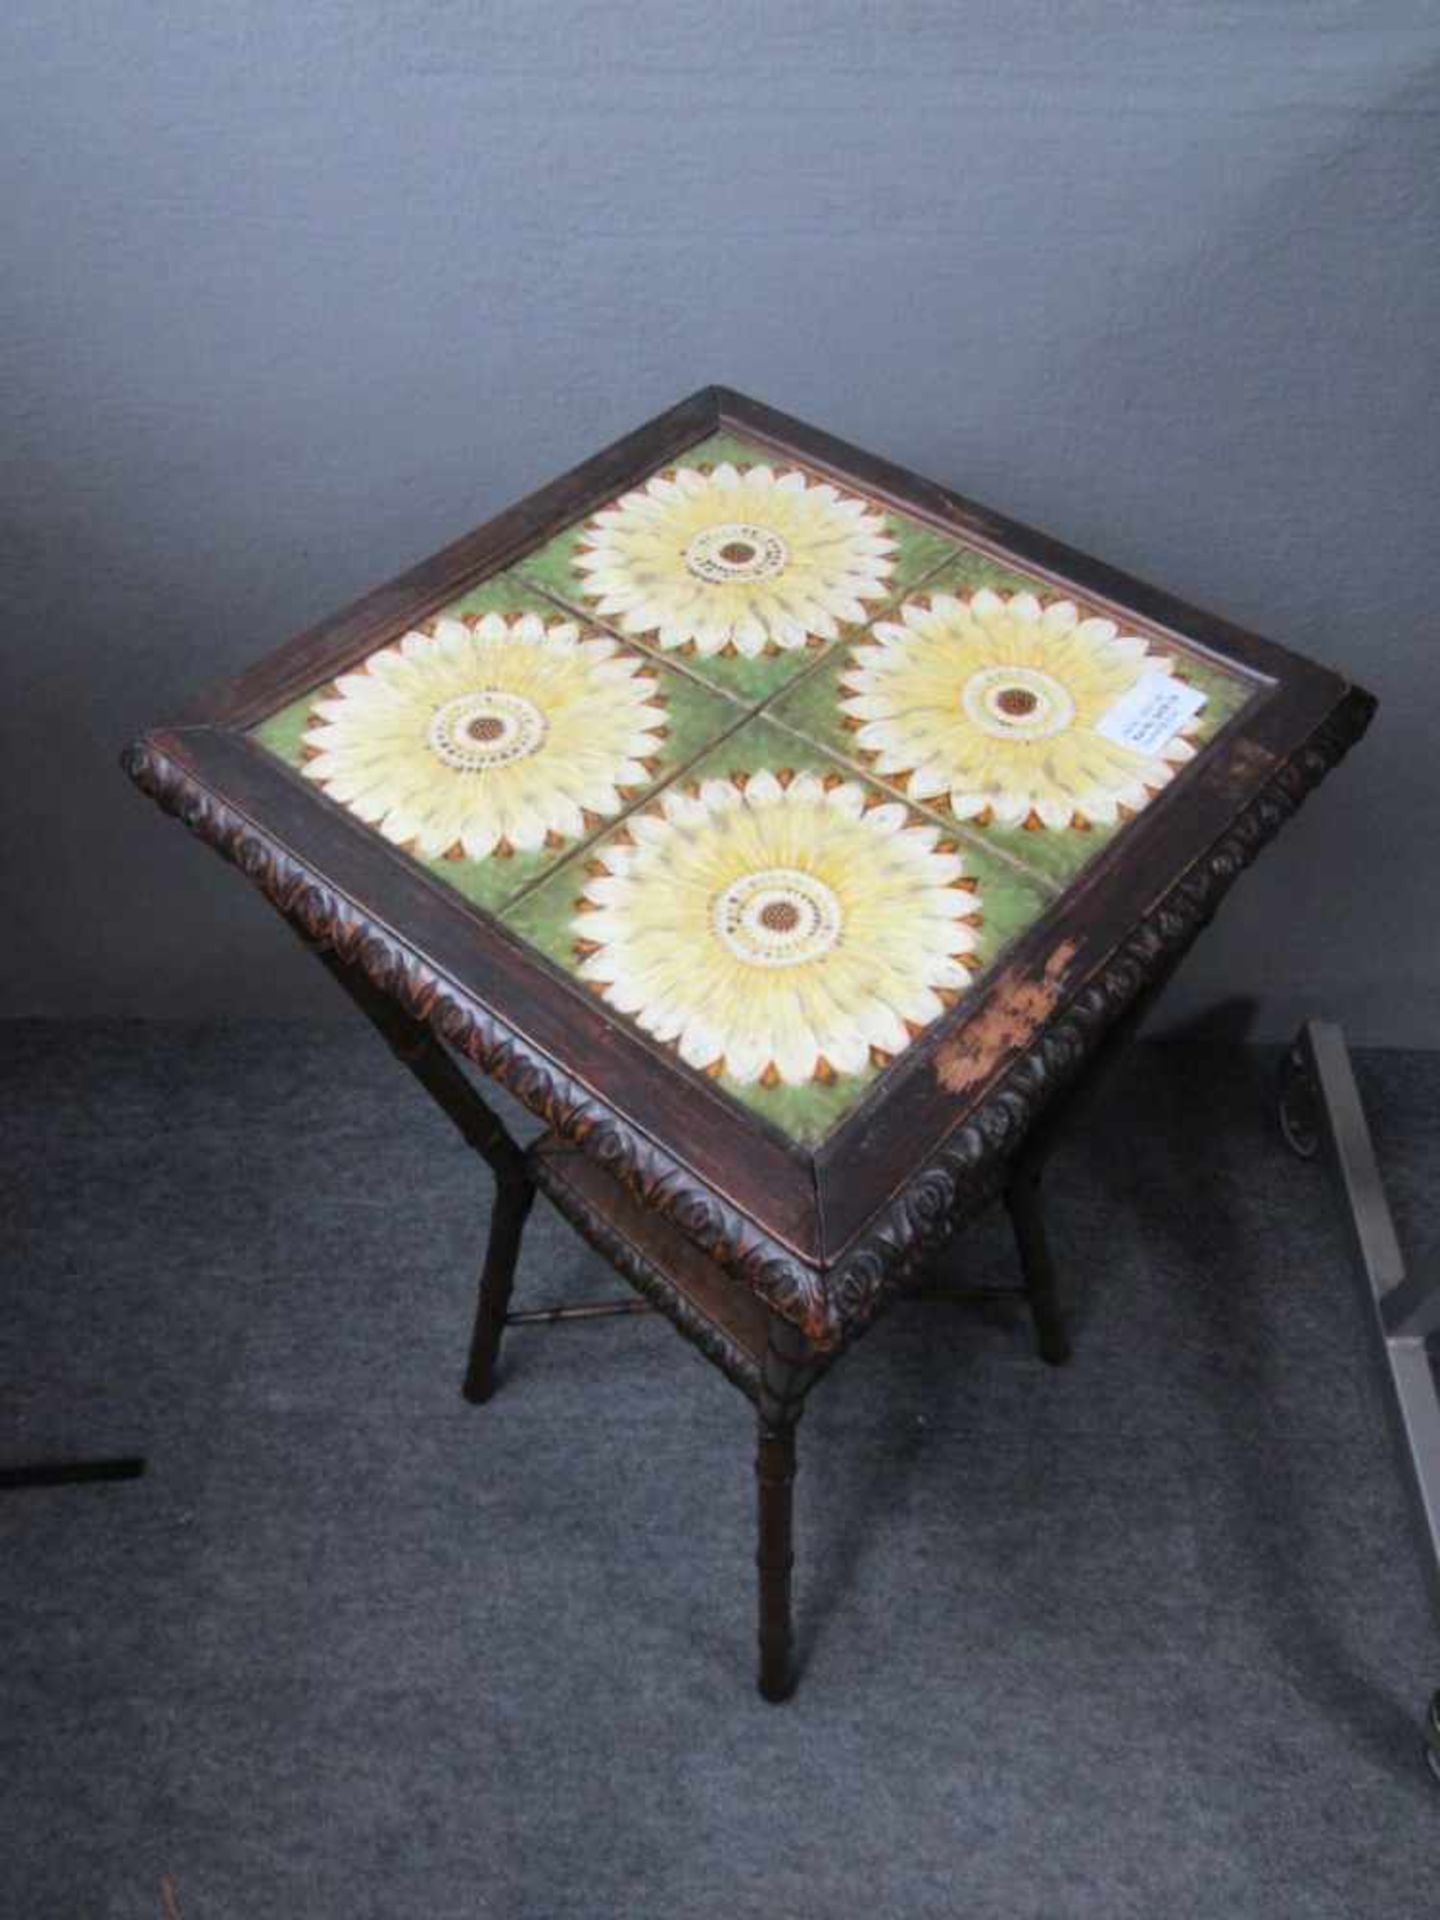 Kleines Tischchen Jugendstil um 1910 6 Fliesen mit Sonnenblumen Ornamentik 74x40x40 cm - Image 2 of 2